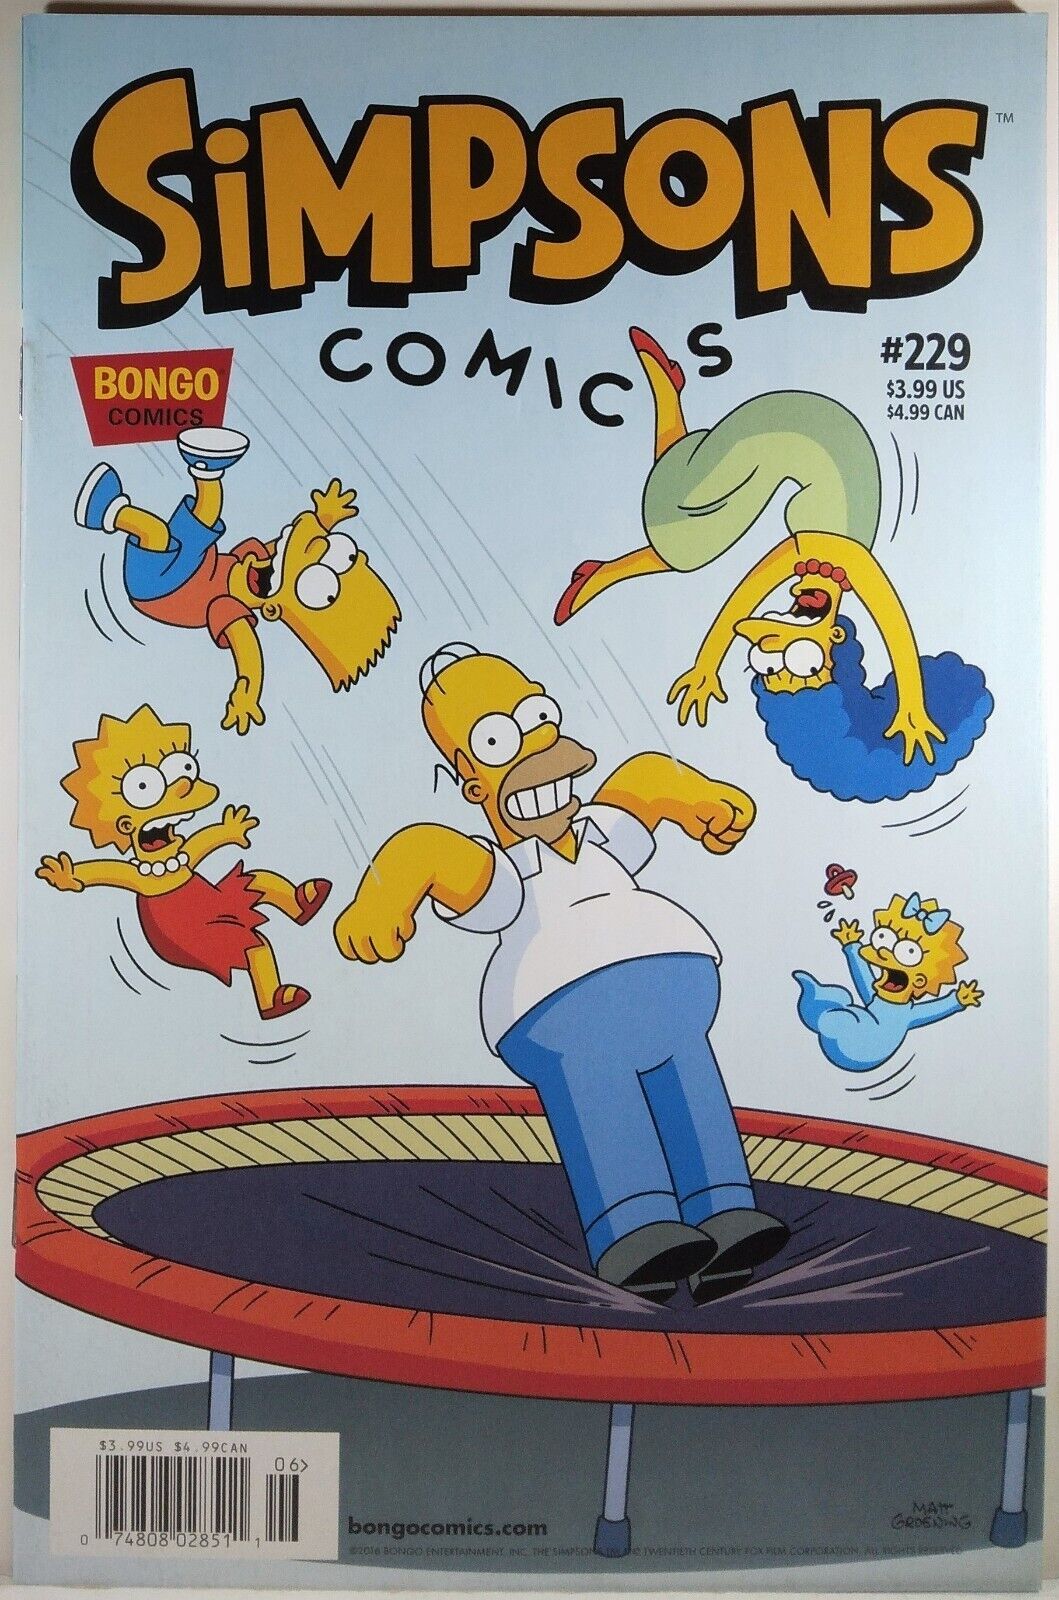 💥 SIMPSONS COMICS #229 NEWSSTAND VARIANT BONGO COMICS 2016 SCARCE Futurama